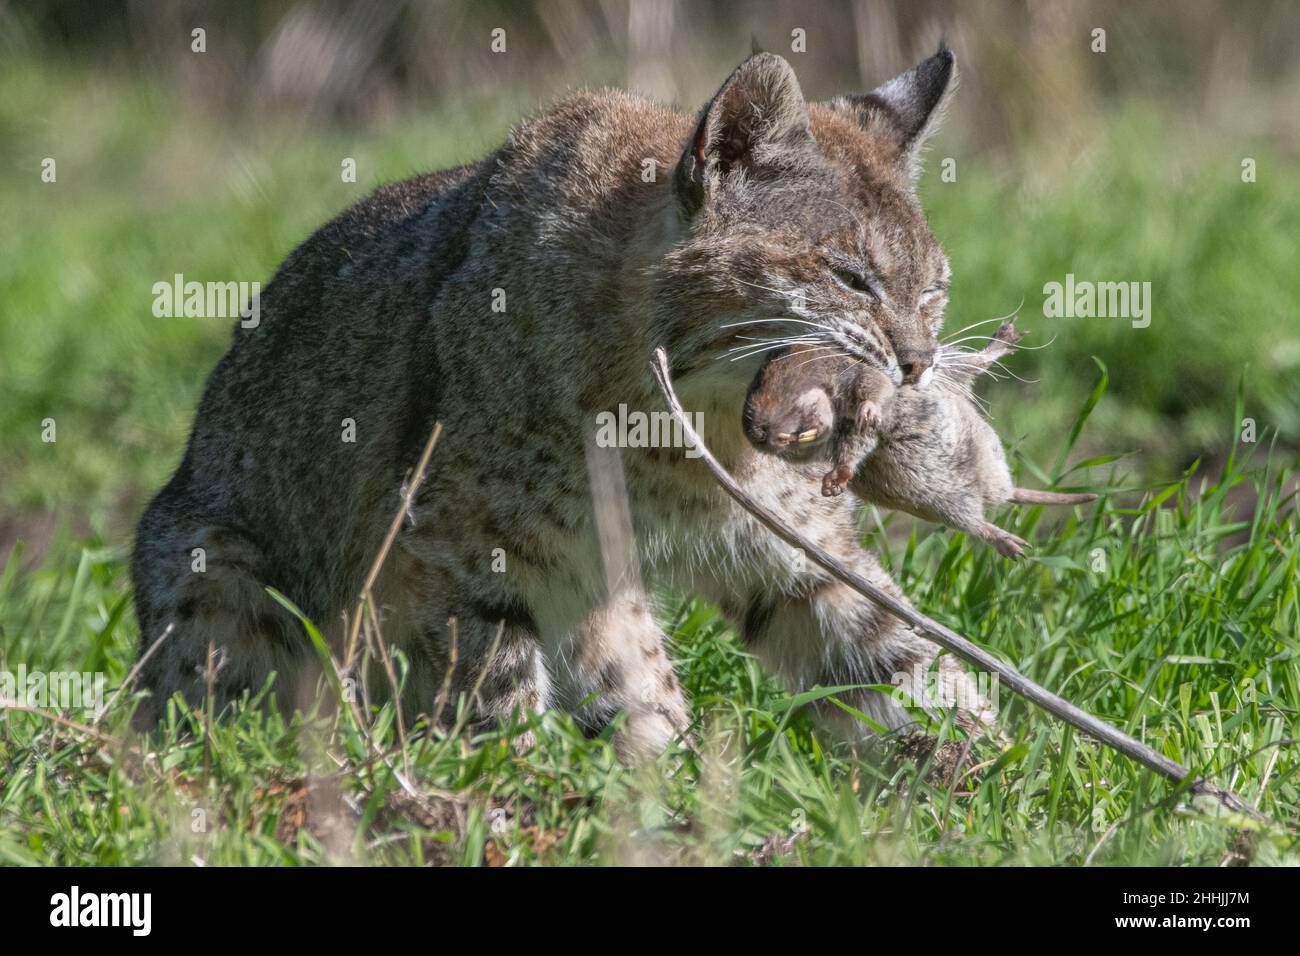 Un lynx roux sauvage (Lynx rufus) qui a capturé un gros gopher et l'accroche dans sa bouche - de Californie, Etats-Unis. Banque D'Images